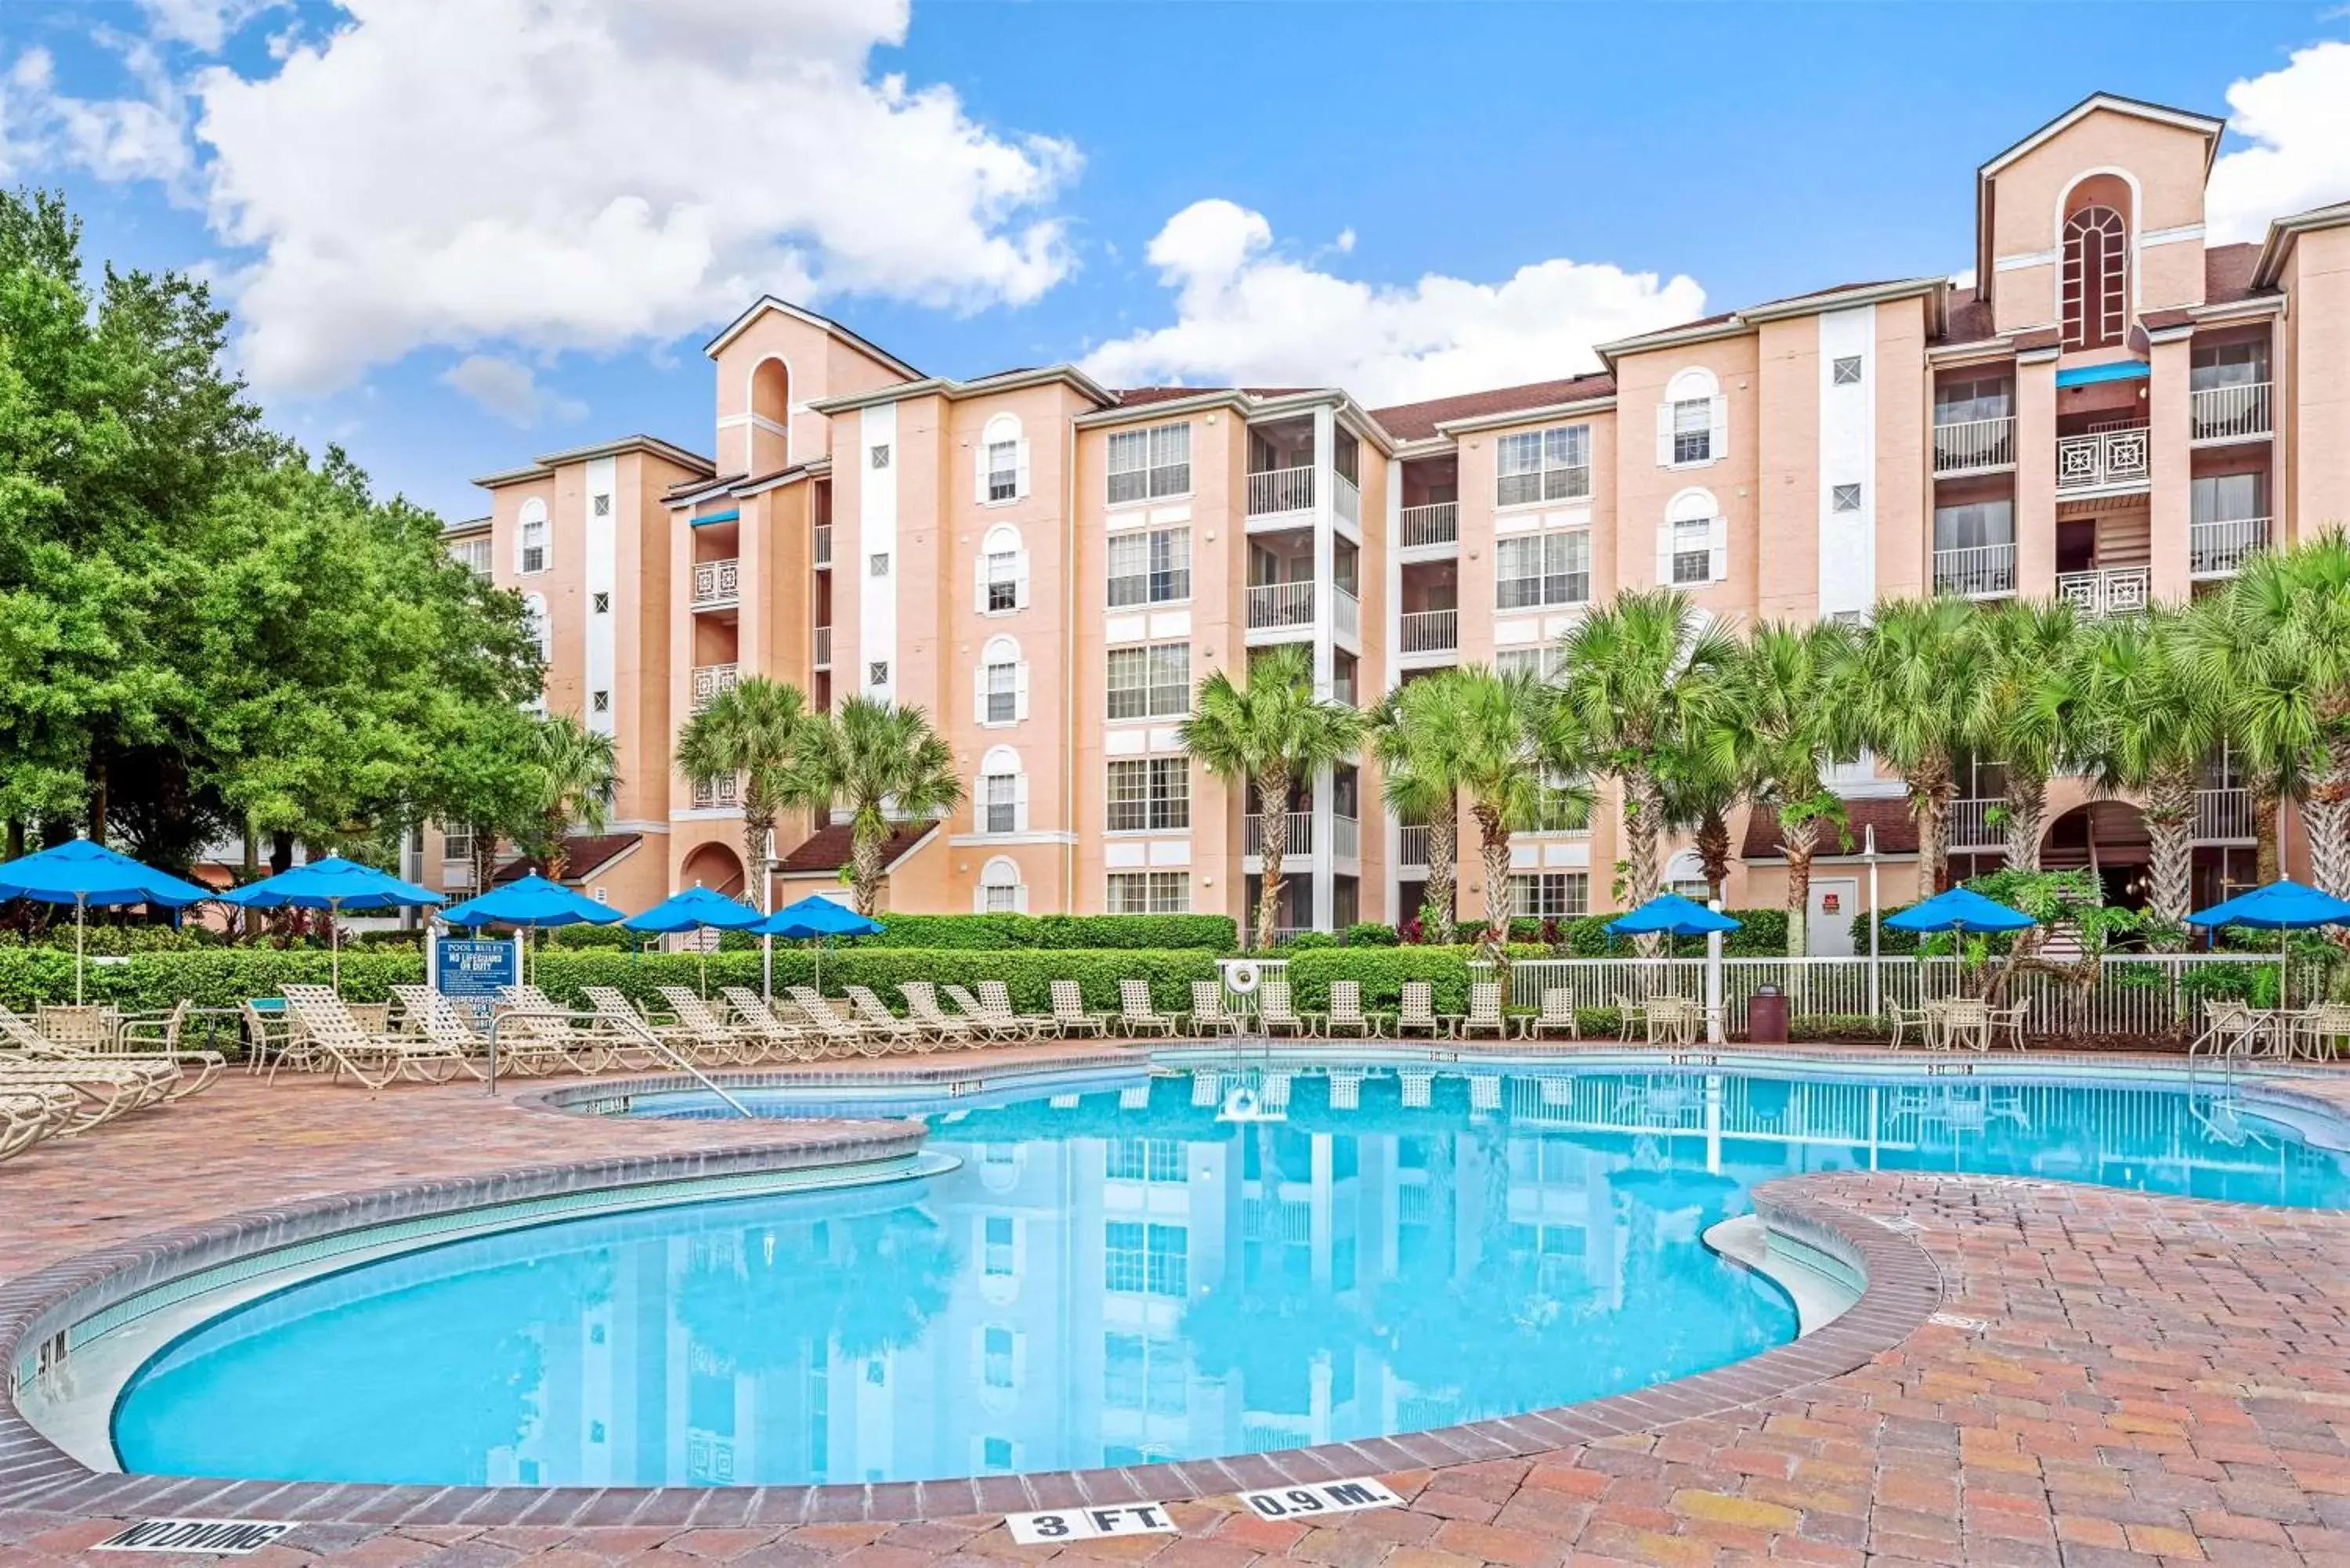 Pool view, Property Building in Hilton Vacation Club Grande Villas Orlando